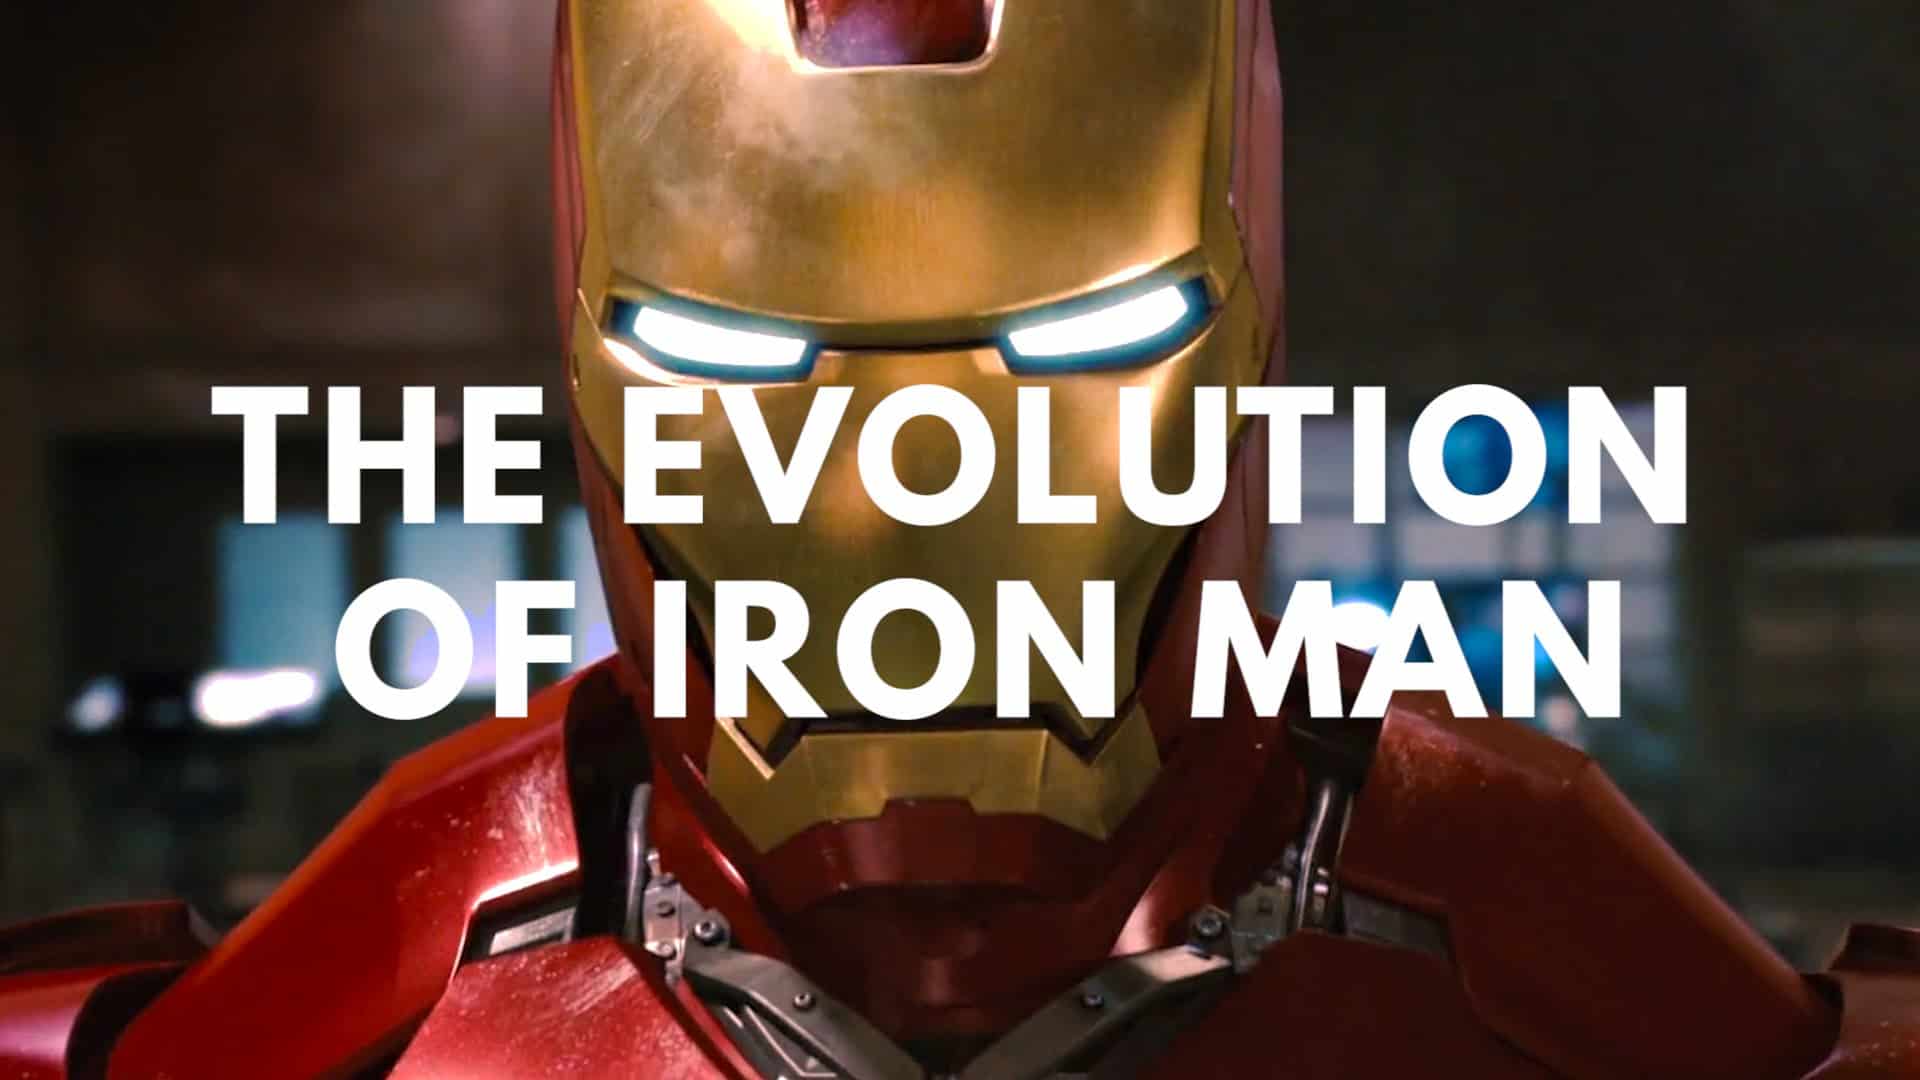 Evolutionen av Iron Man i TV och film